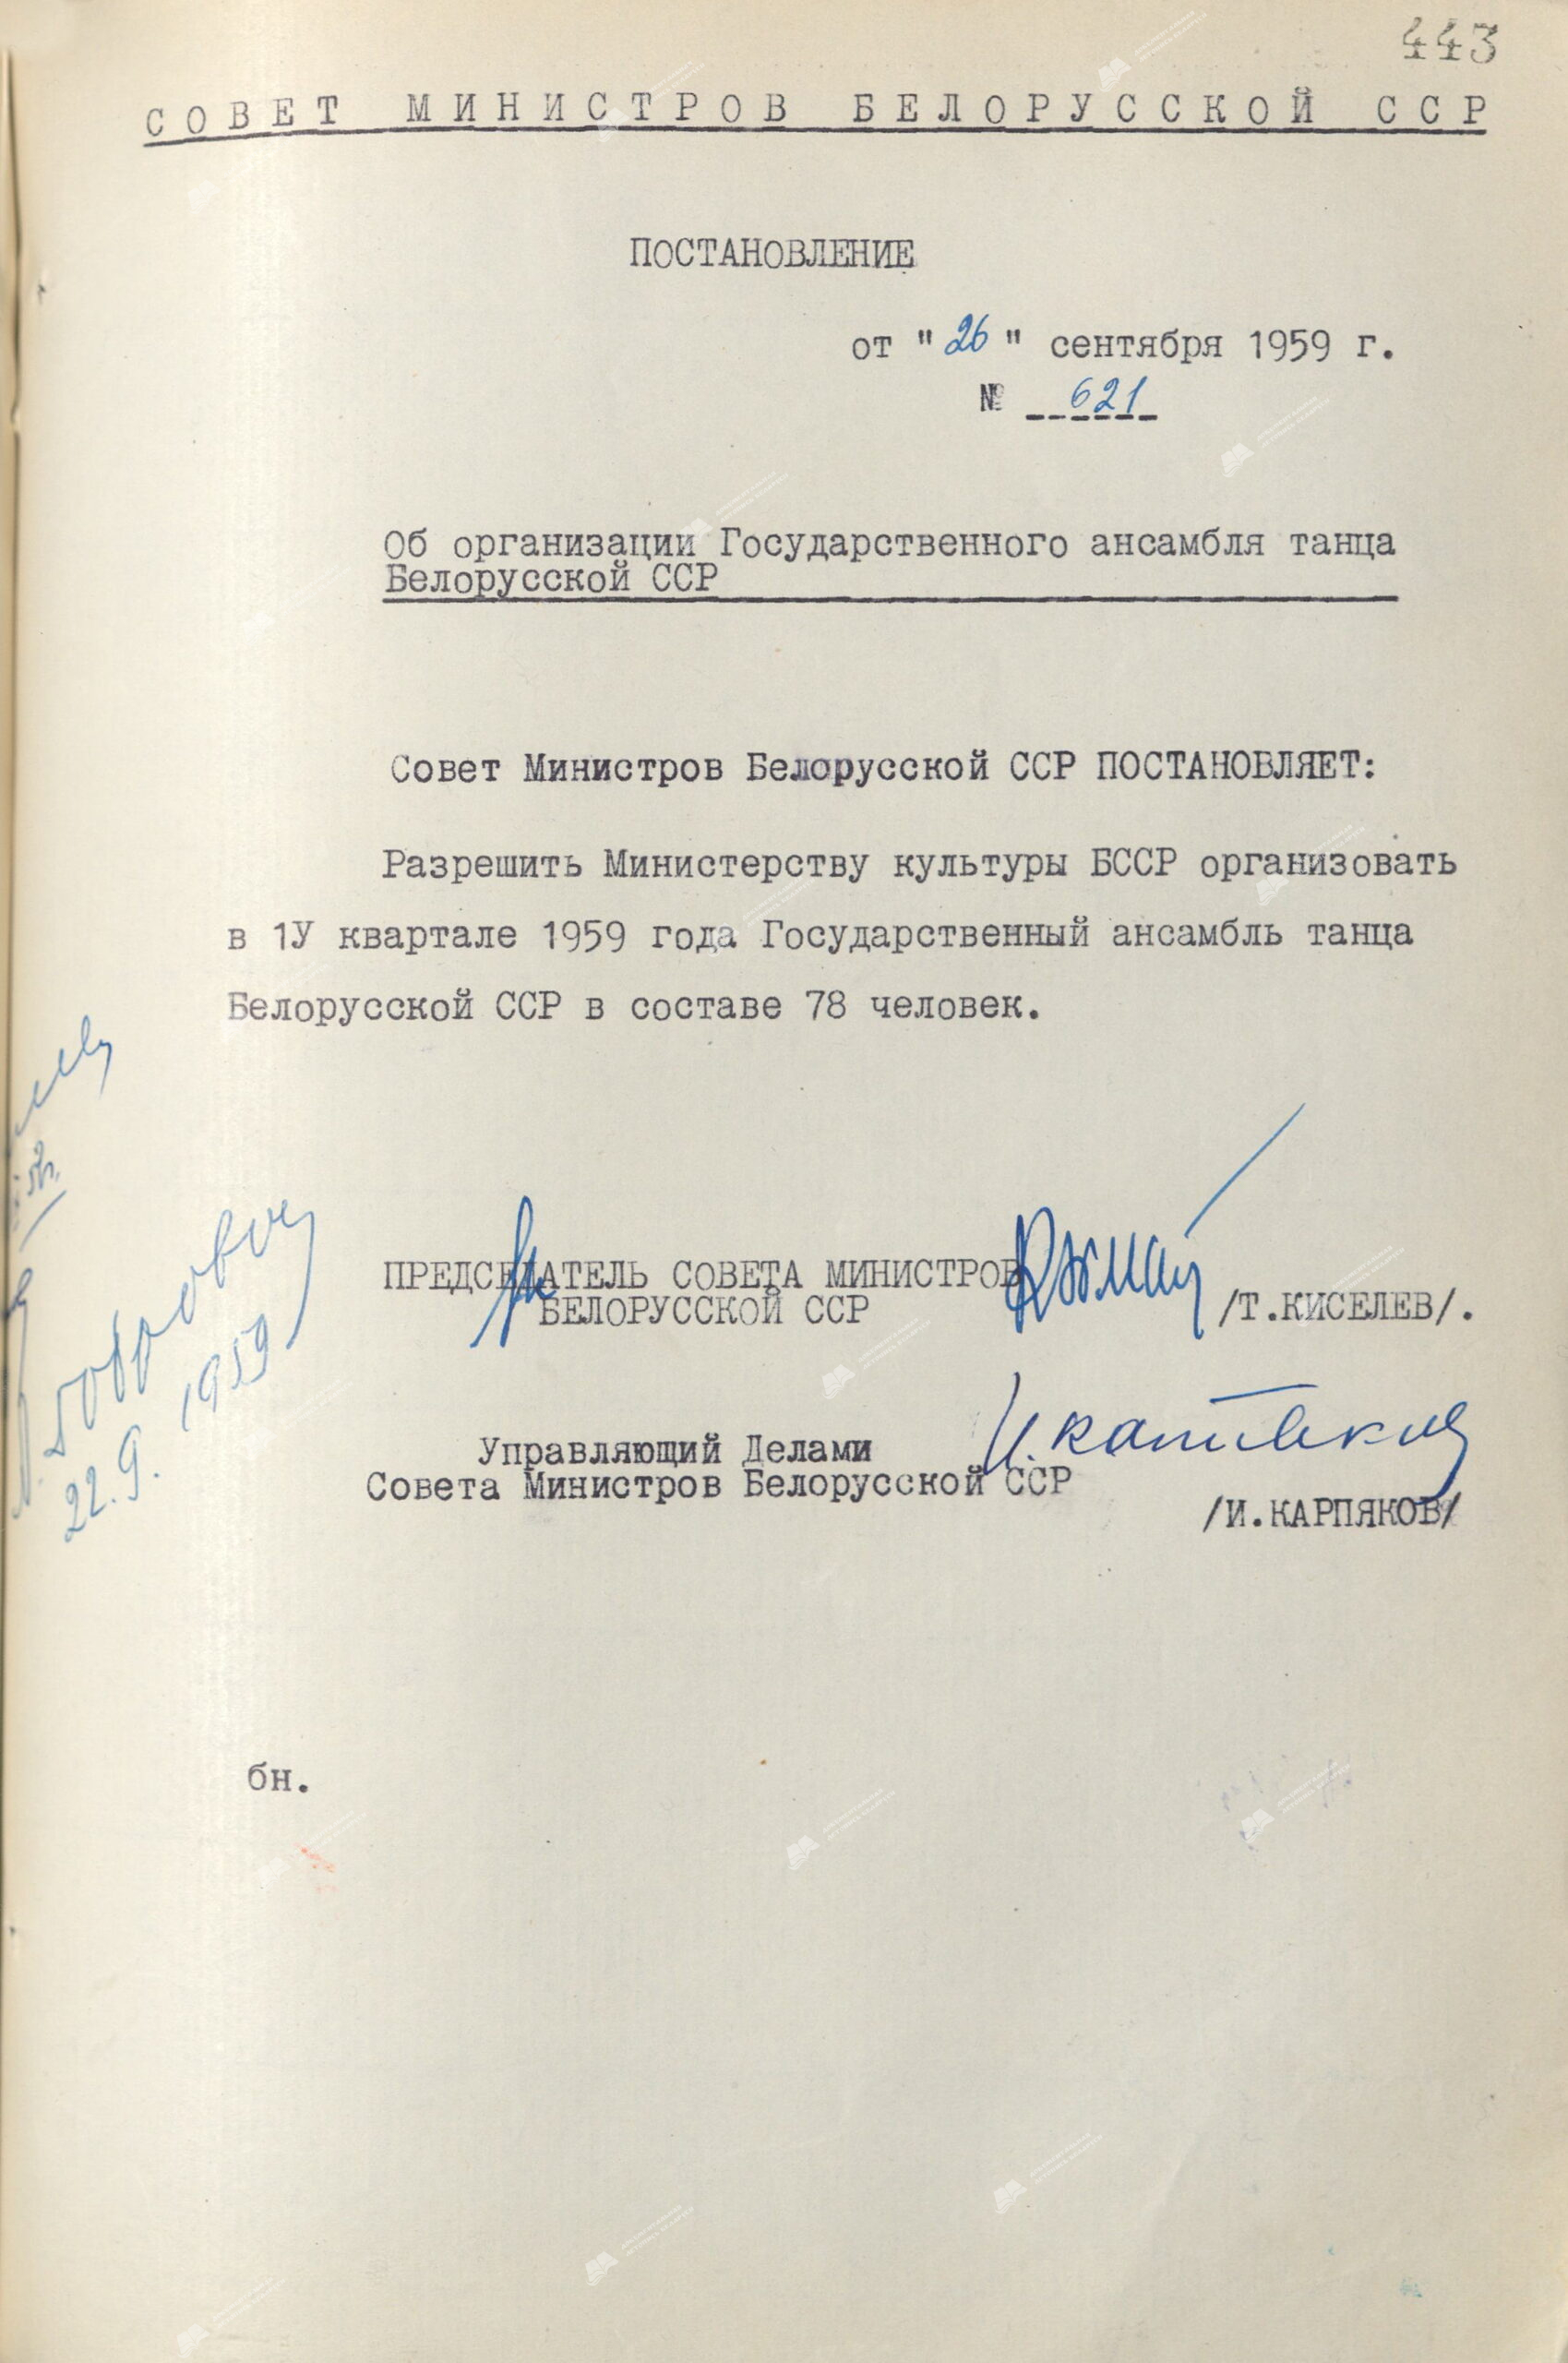 Beschluss Nr. 621 des Ministerrates der BSSR «Über die Organisation des Staatlichen Tanzensembles der belarussischen SSR»-стр. 0